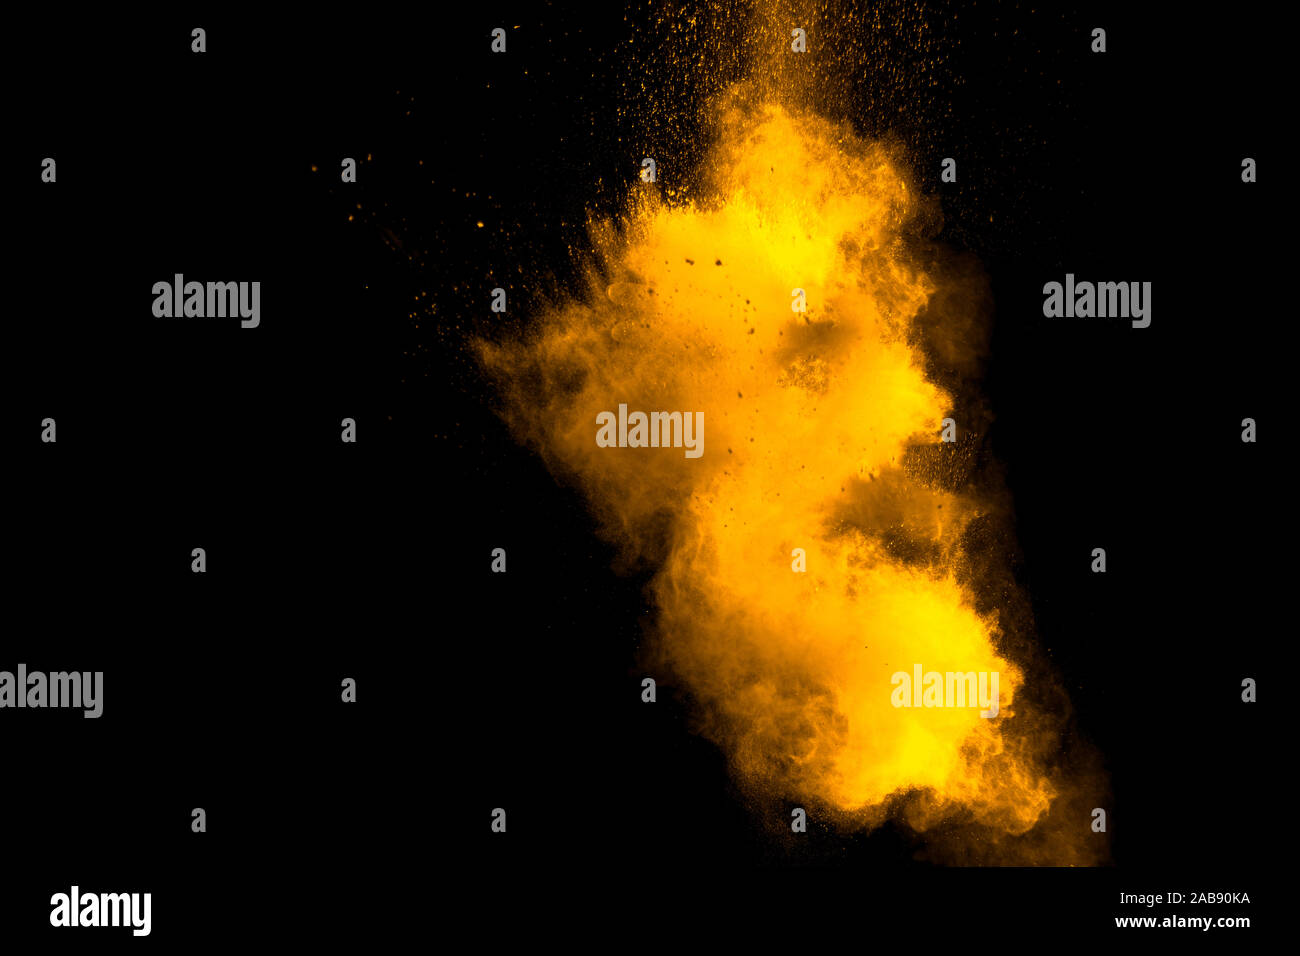 Abstract orange powder explosion on black background. Freeze motion of orange powder splash. Stock Photo